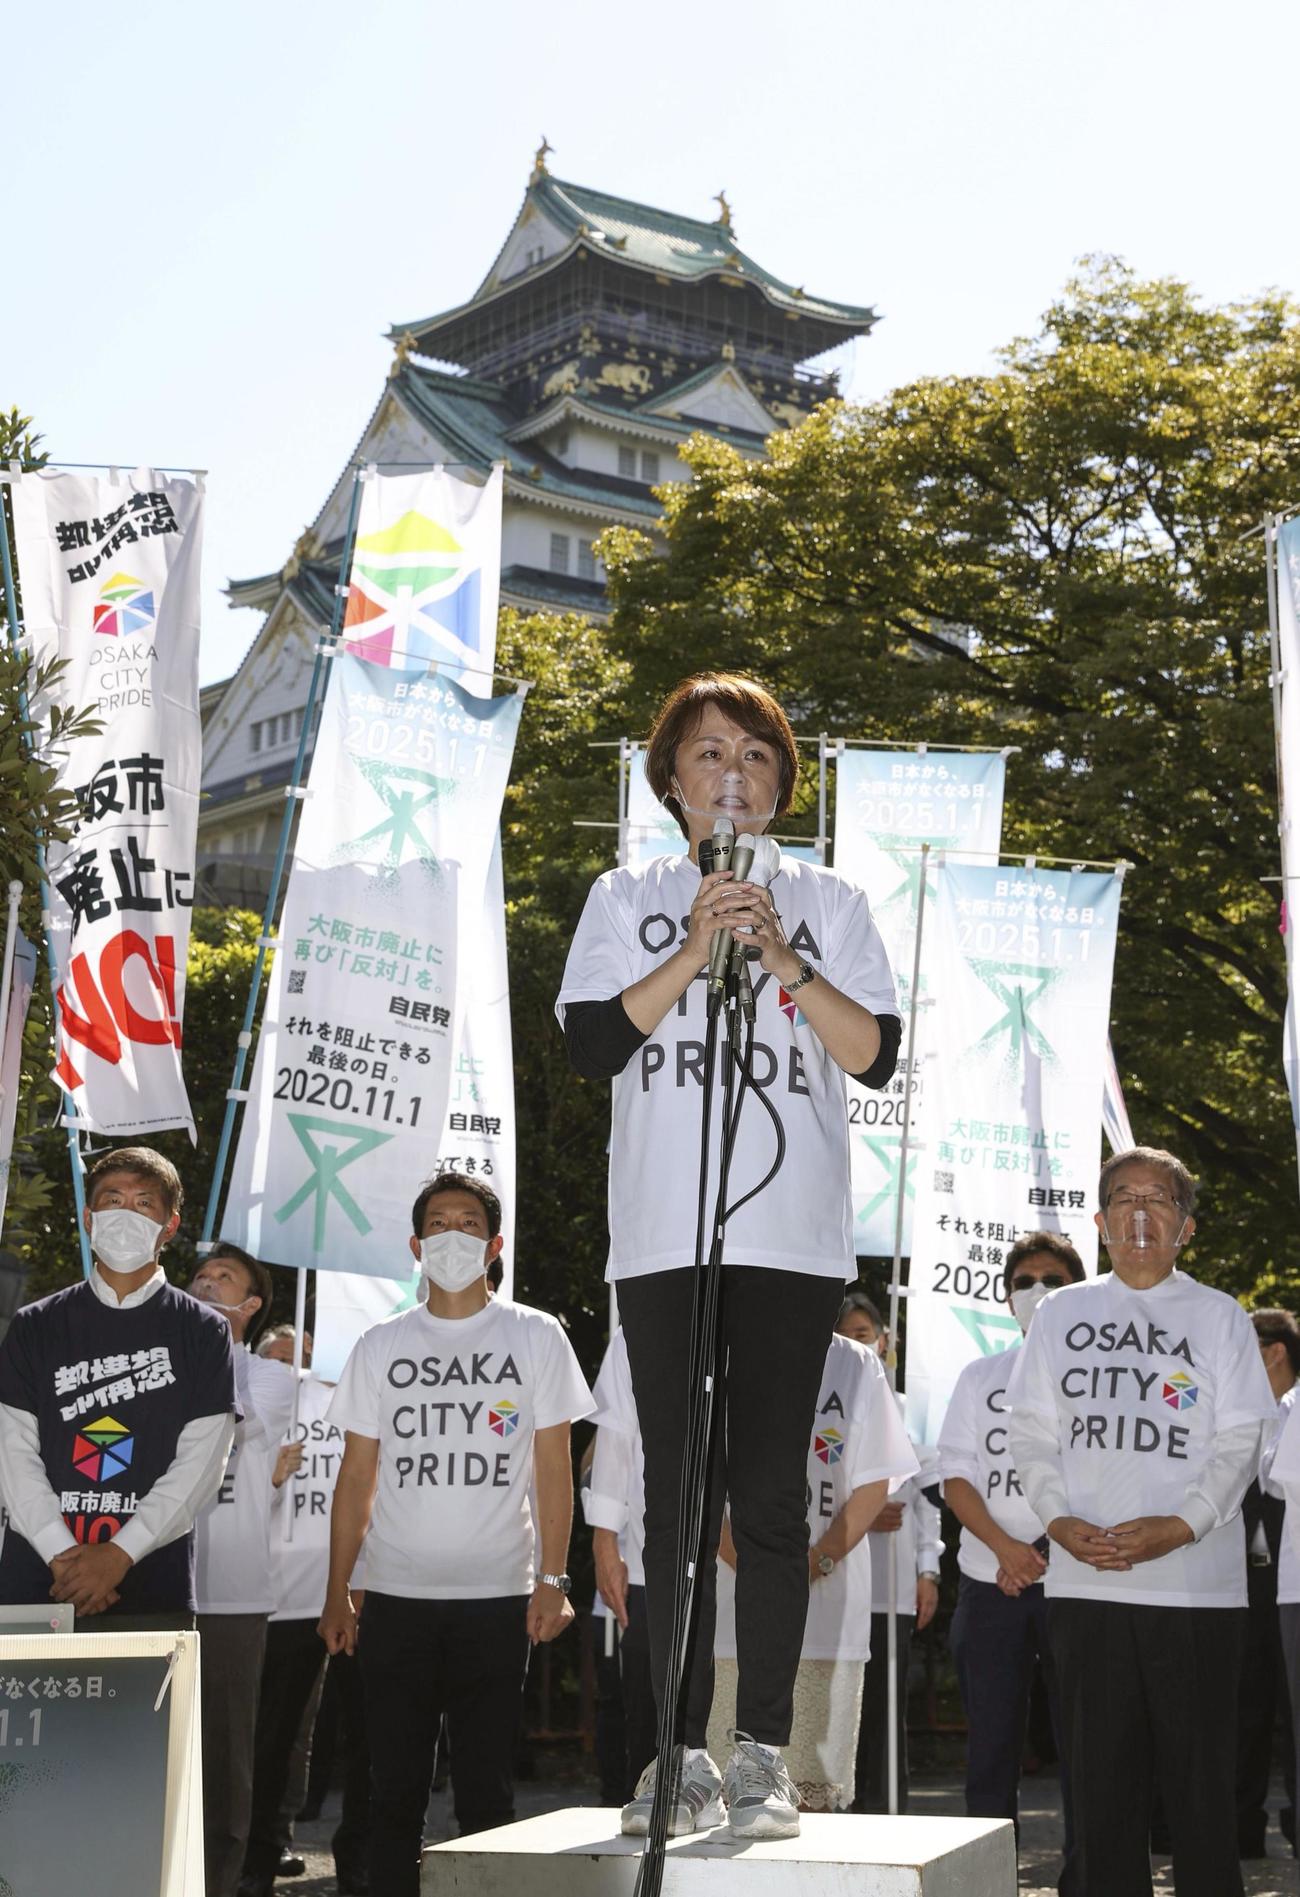 「大阪都構想」の住民投票が告示され、街頭演説する自民党大阪市会議員団の北野妙子幹事長